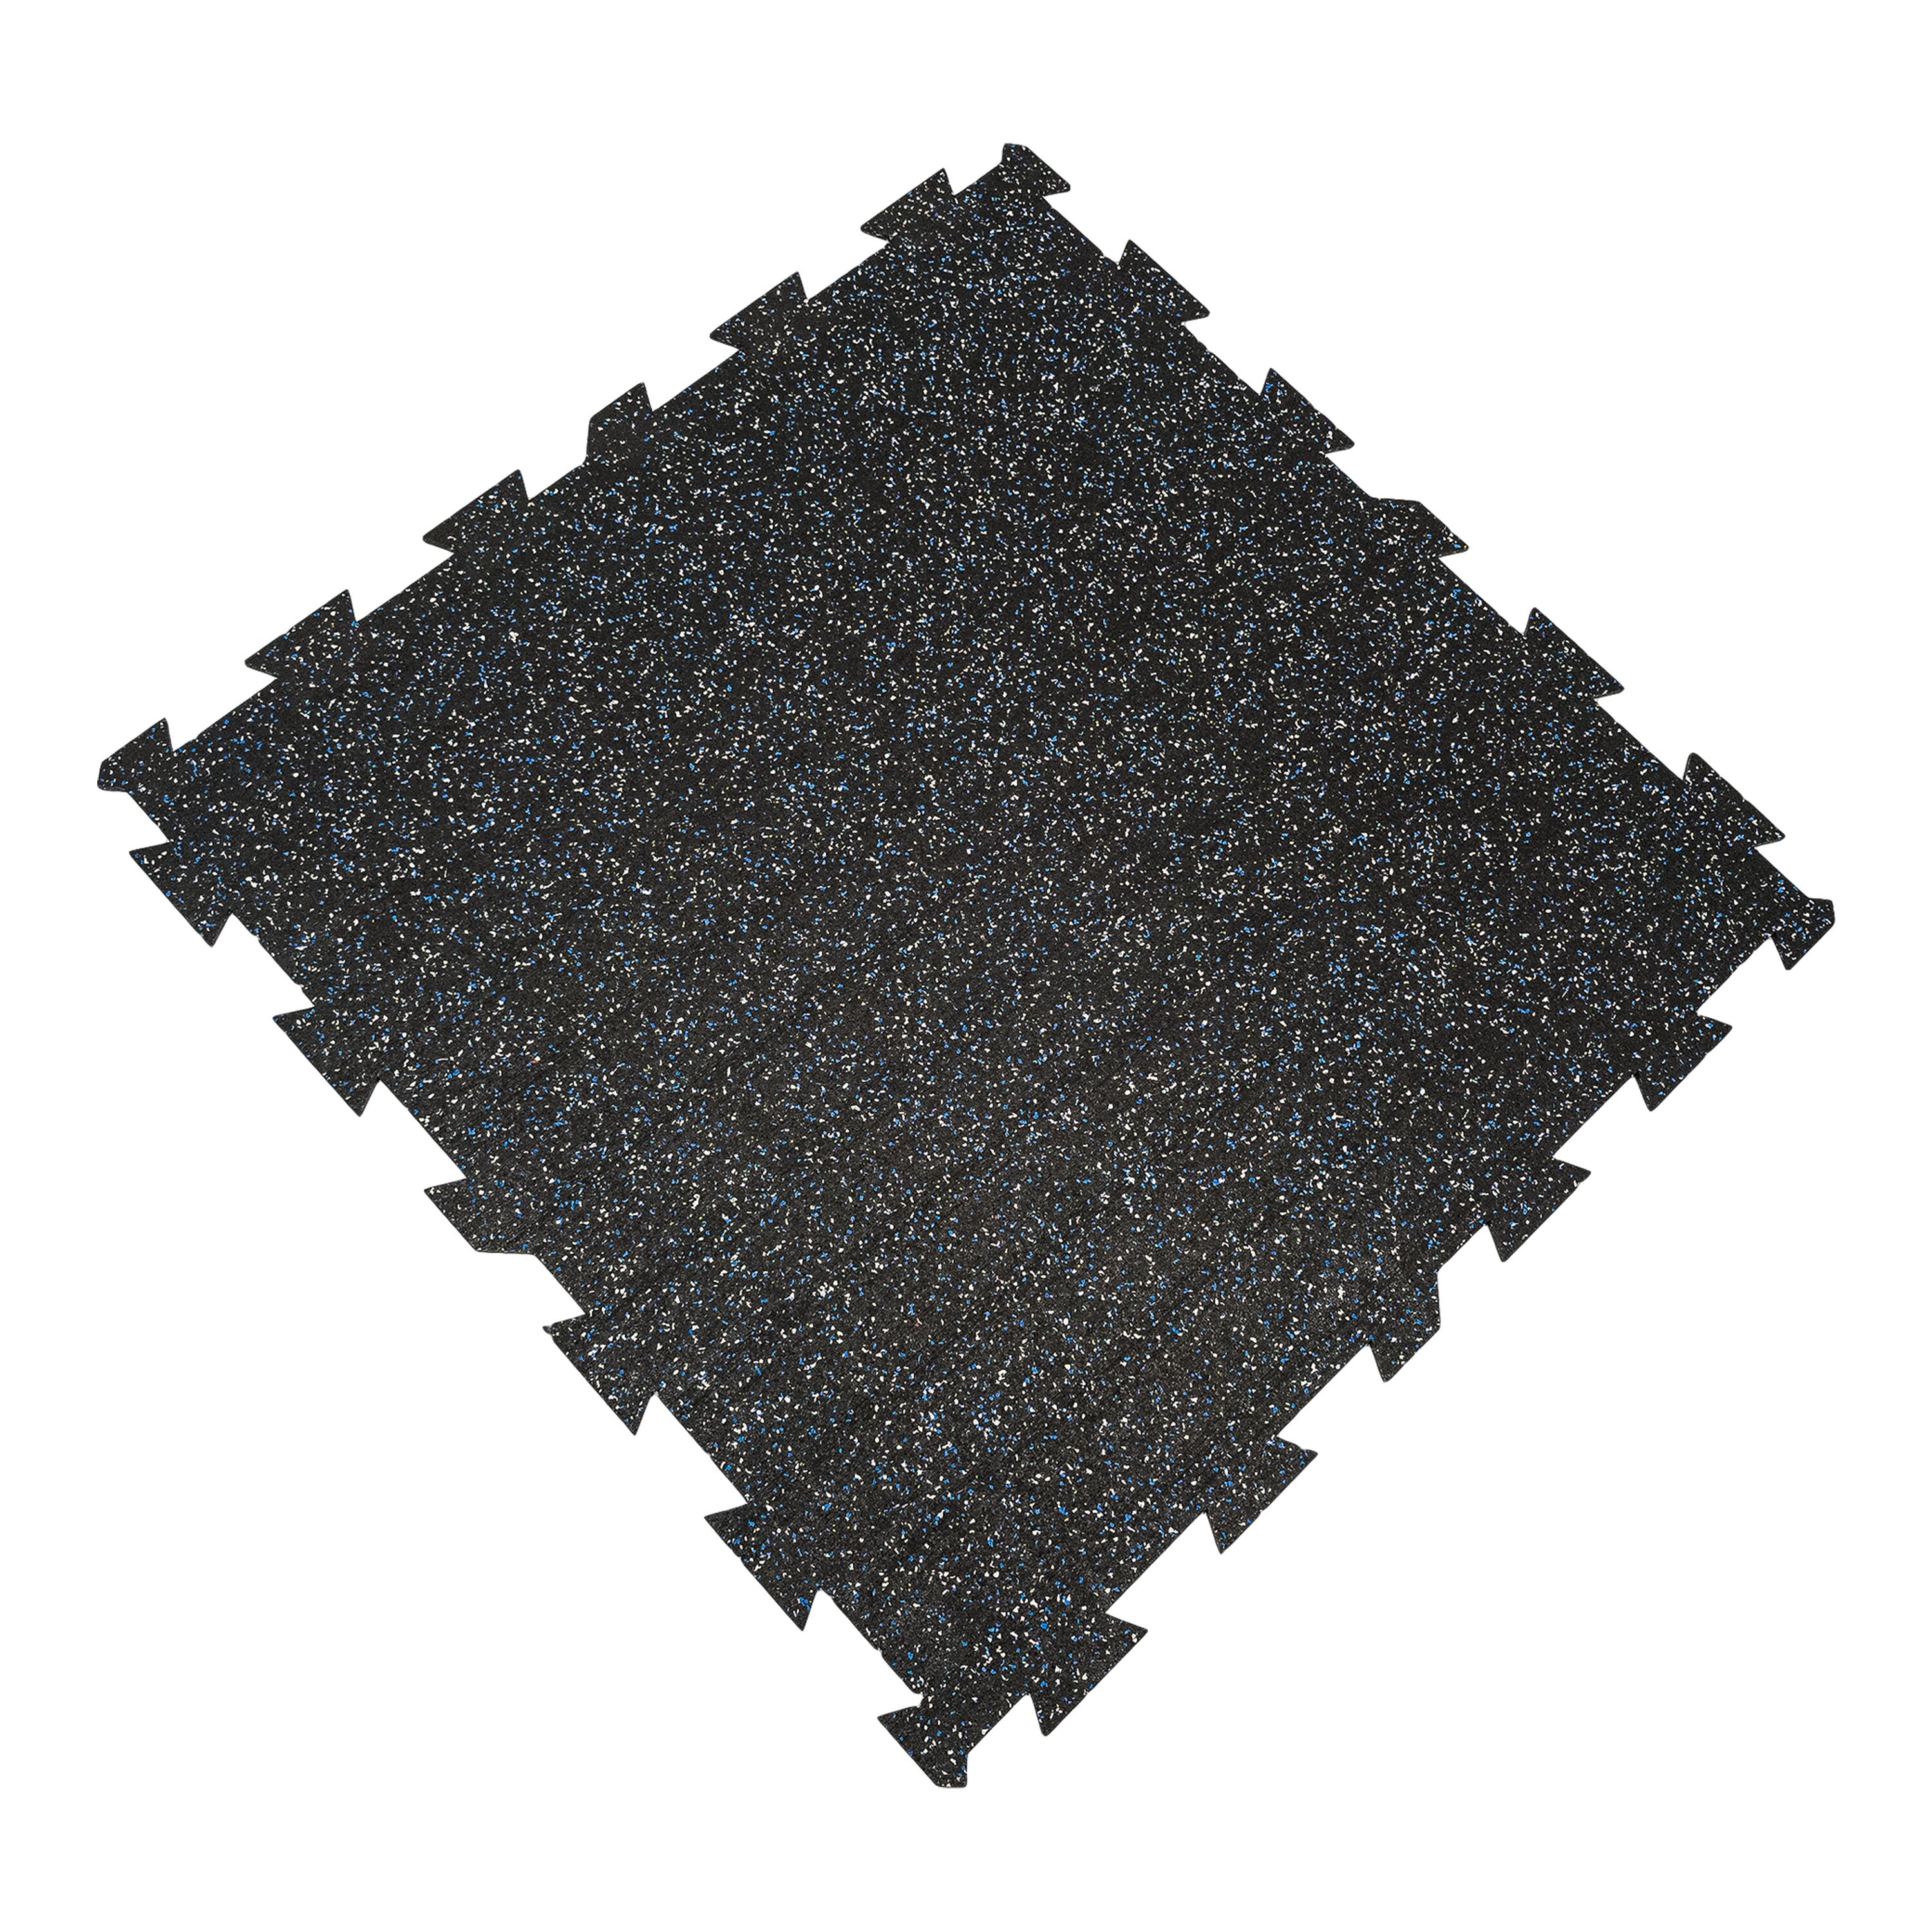 Černo-bílo-modrá gumová modulová puzzle dlažba FLOMA FitFlo SF1050 - délka 100 cm, šířka 100 cm, výška 0,8 cm